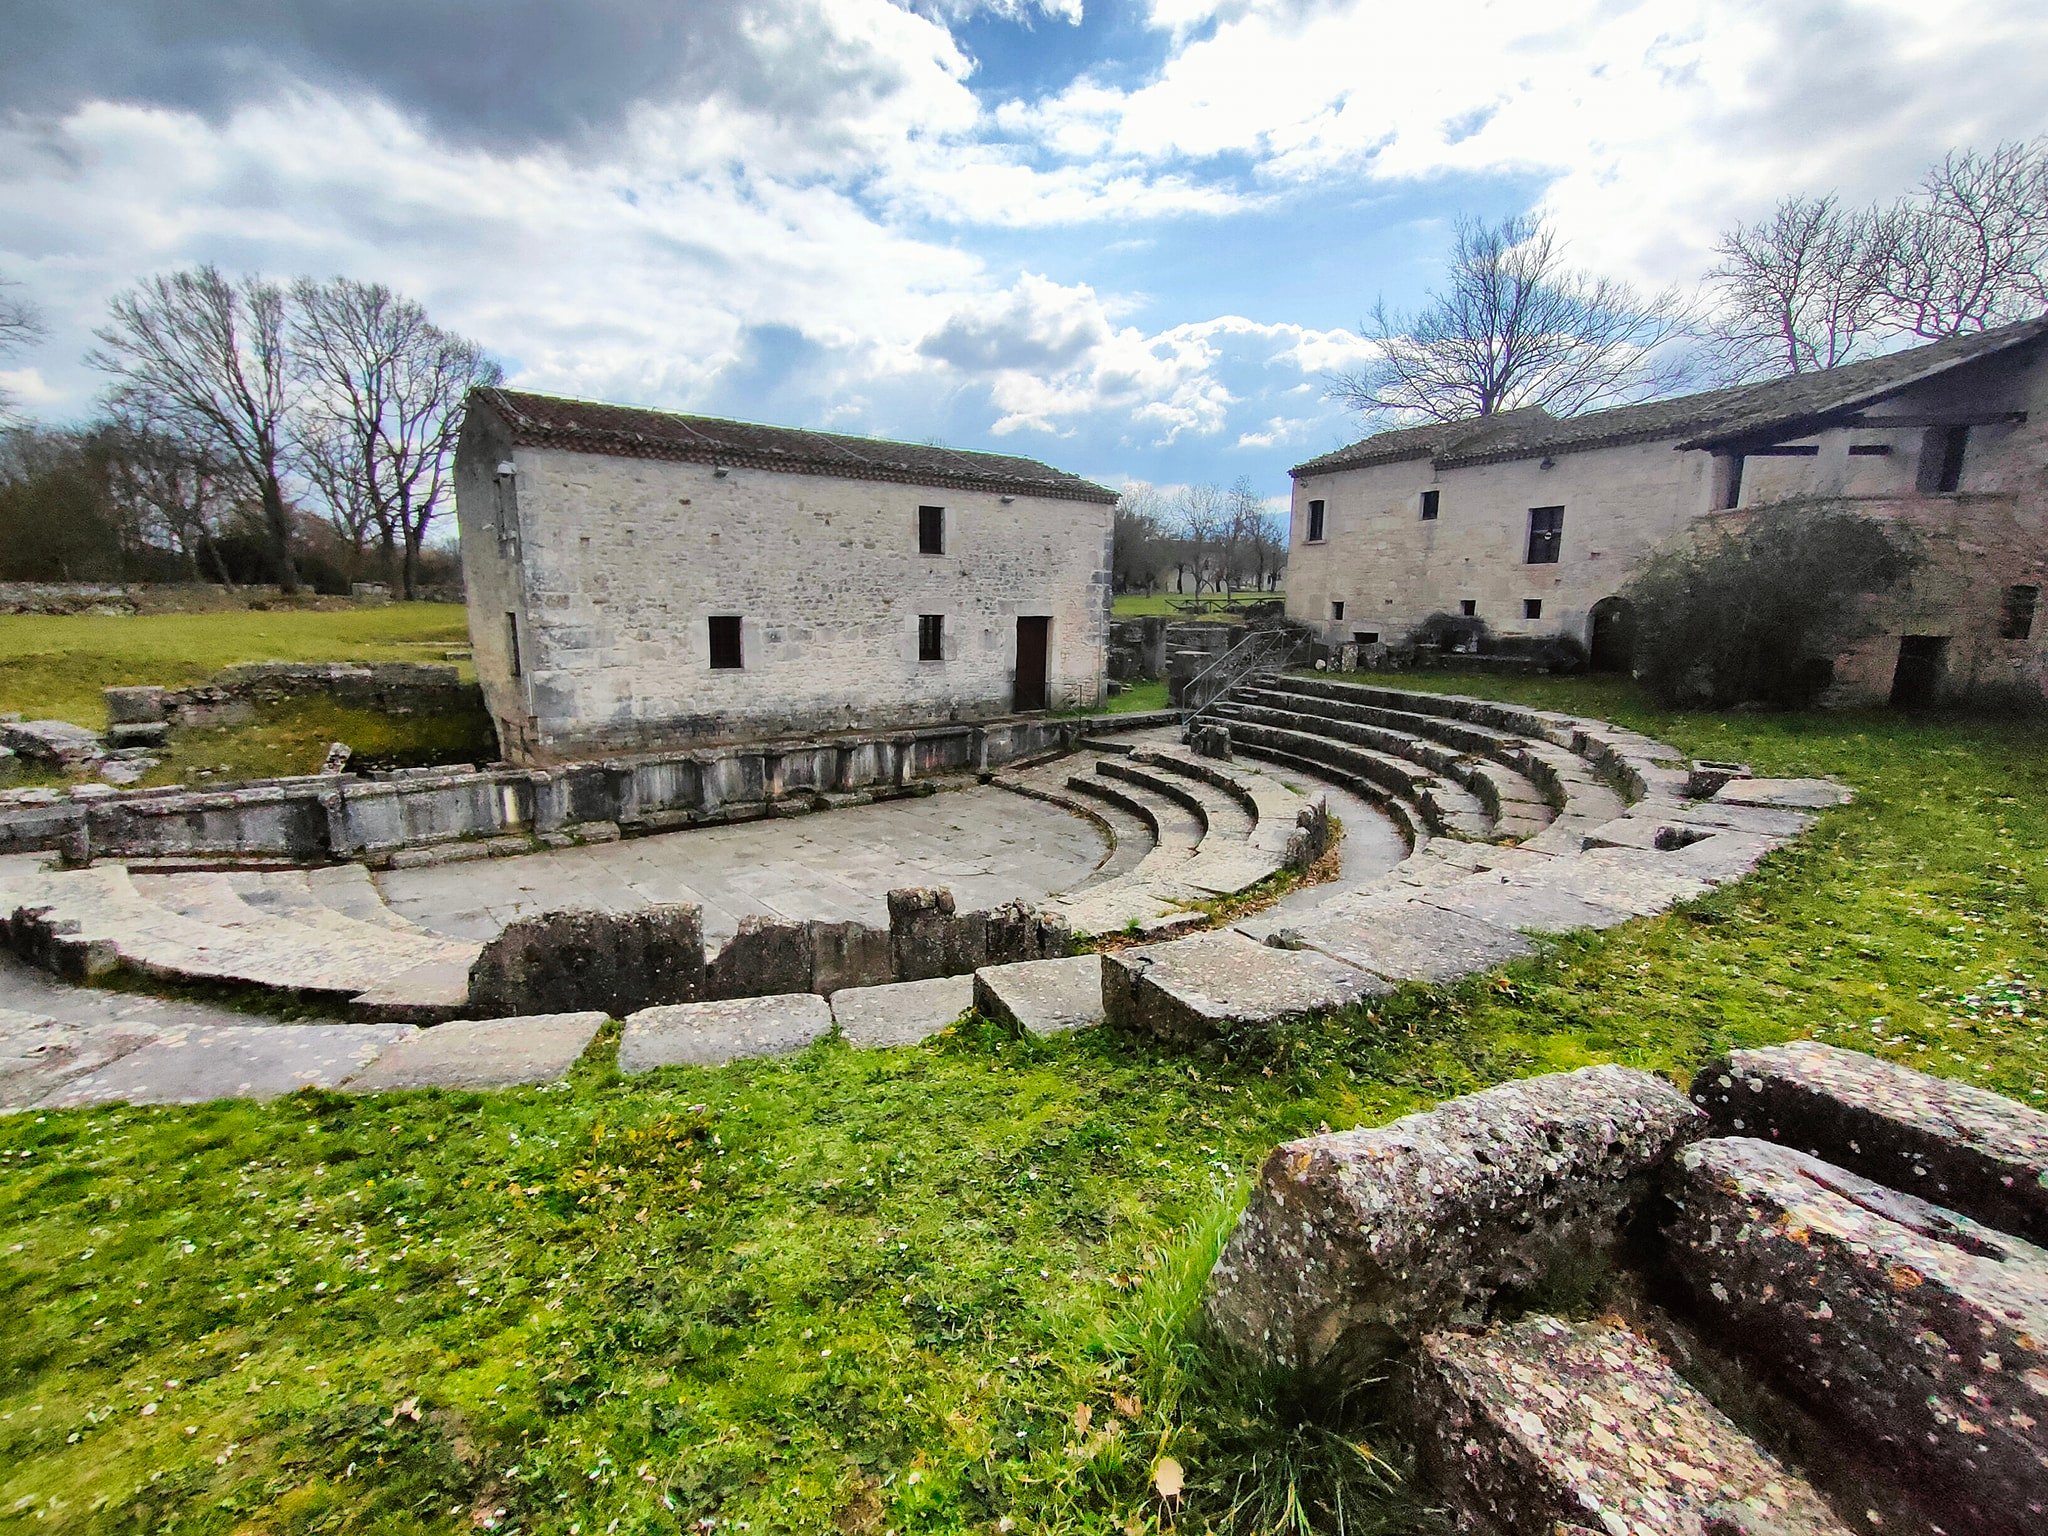 Teatro romano nel sito archeologico di Altilia di Sepino